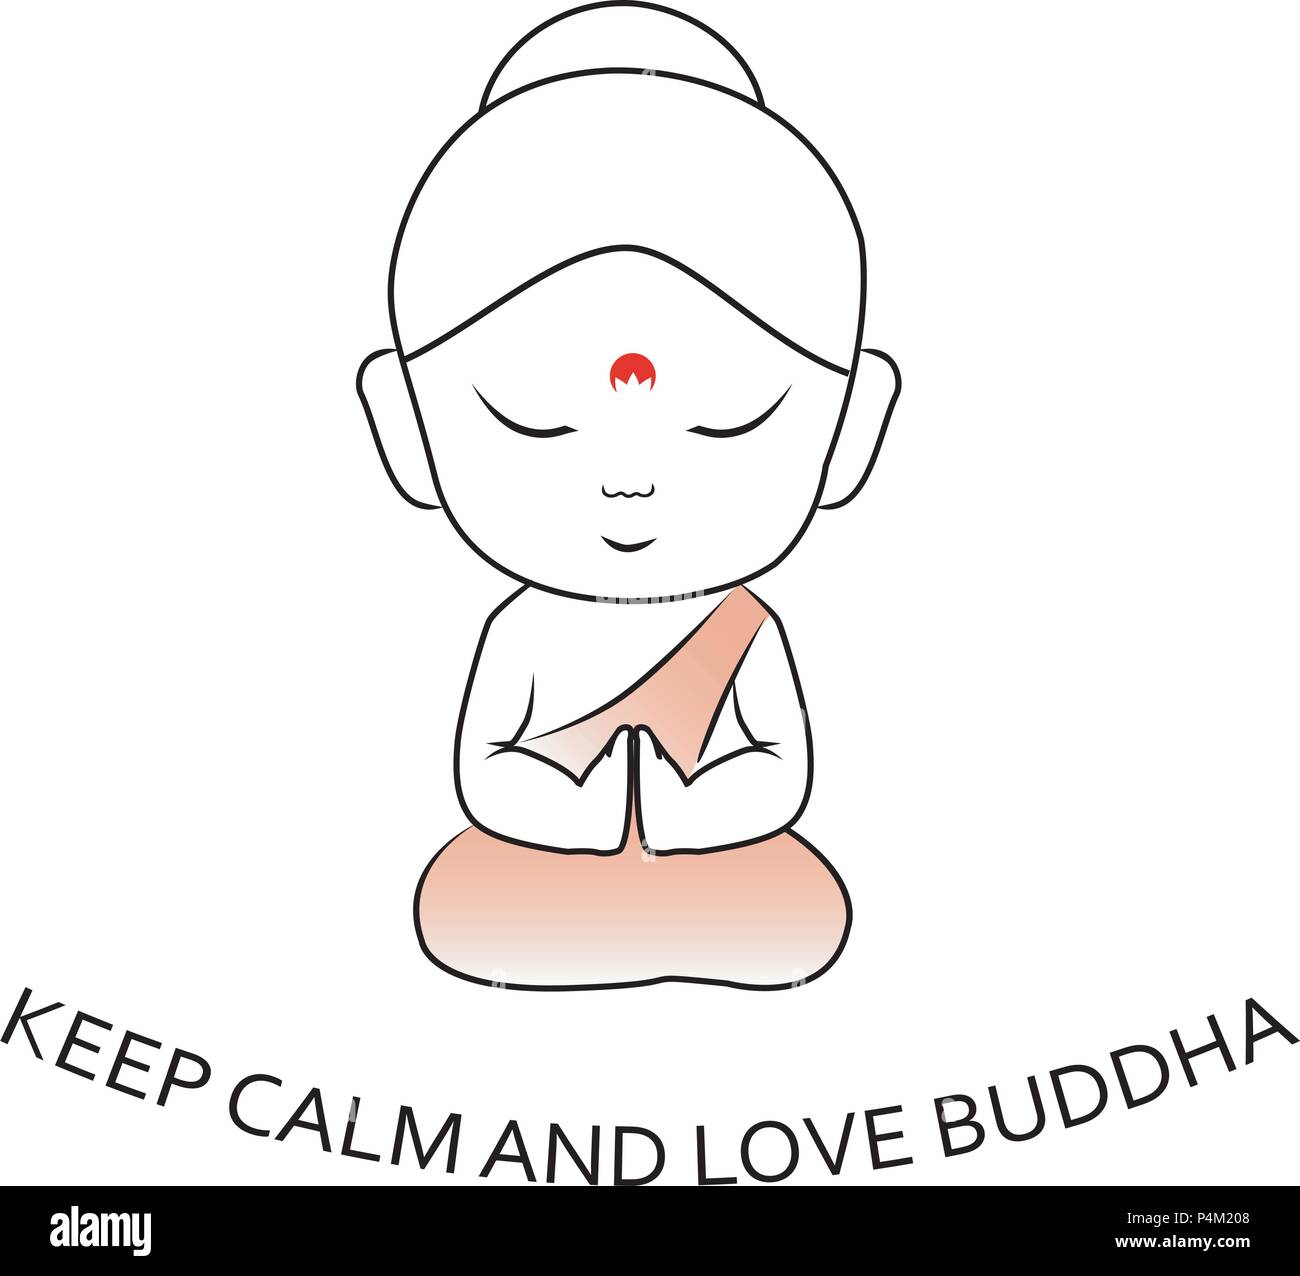 Ruhe Bewahren Und Buddha Susse Kleine Sitzender Buddha Mit Motivationalen Zitat Liebe Stock Vektorgrafik Alamy